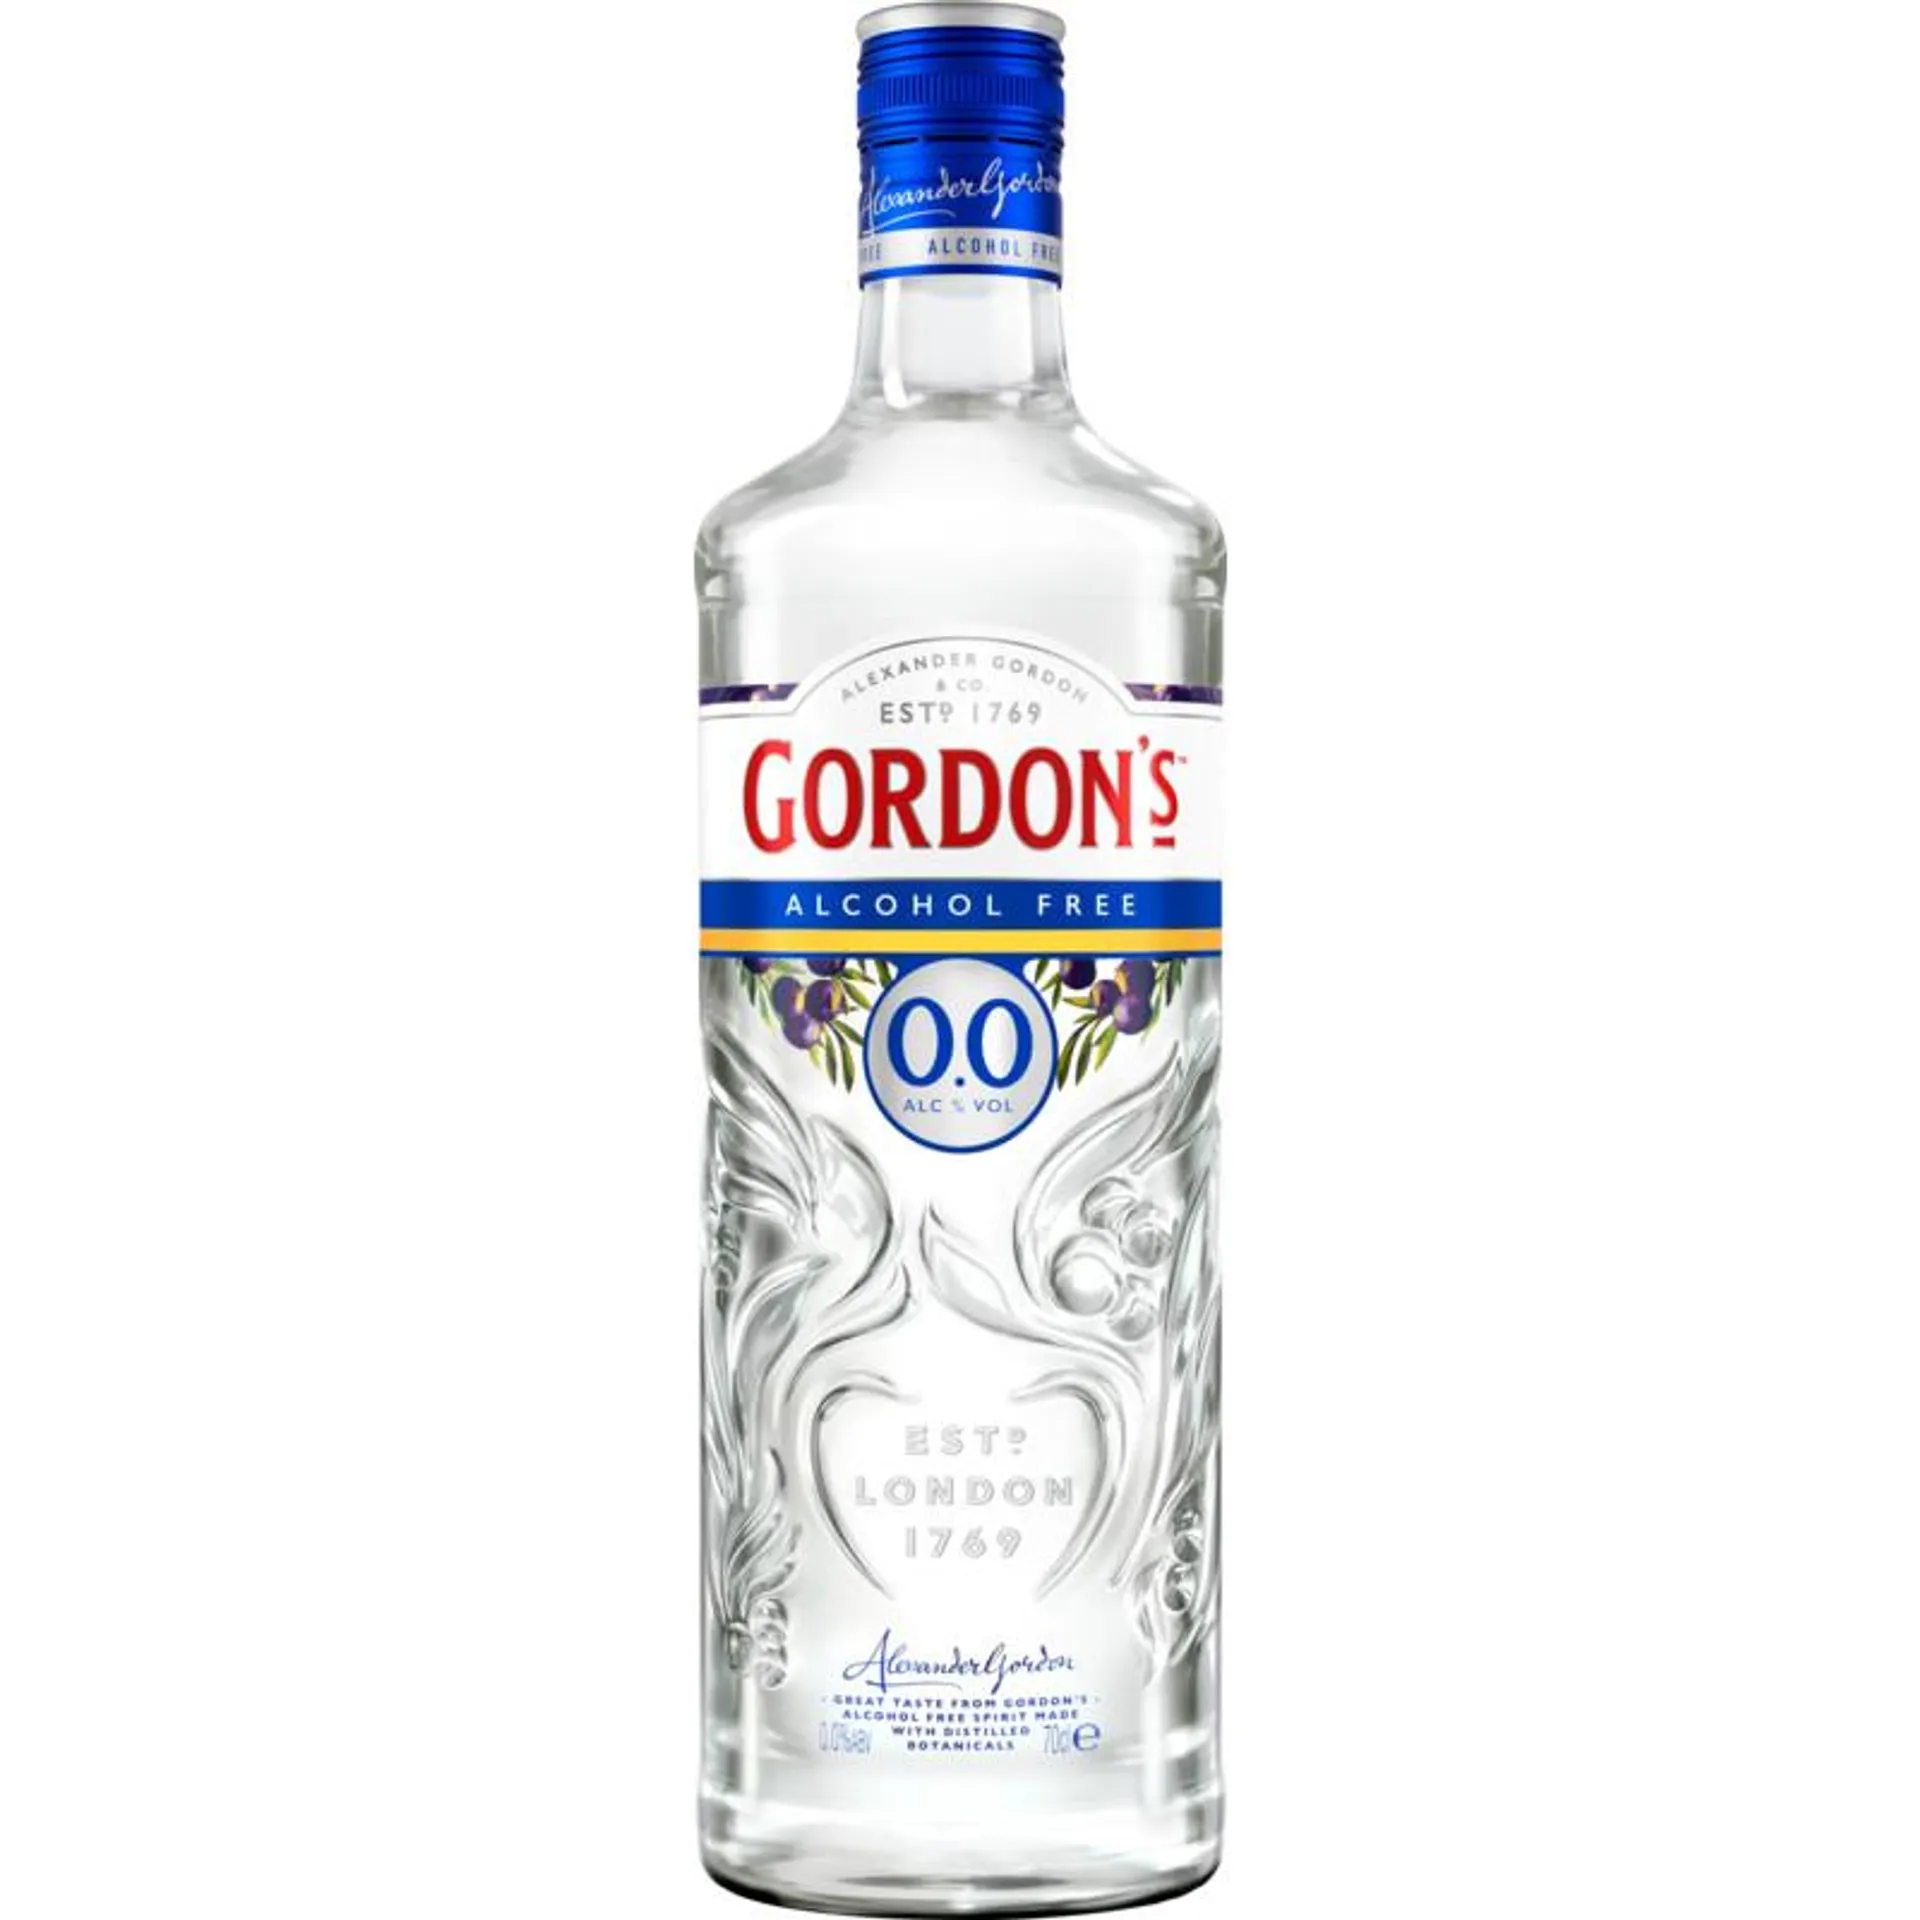 Gordon's Gin alcohol free